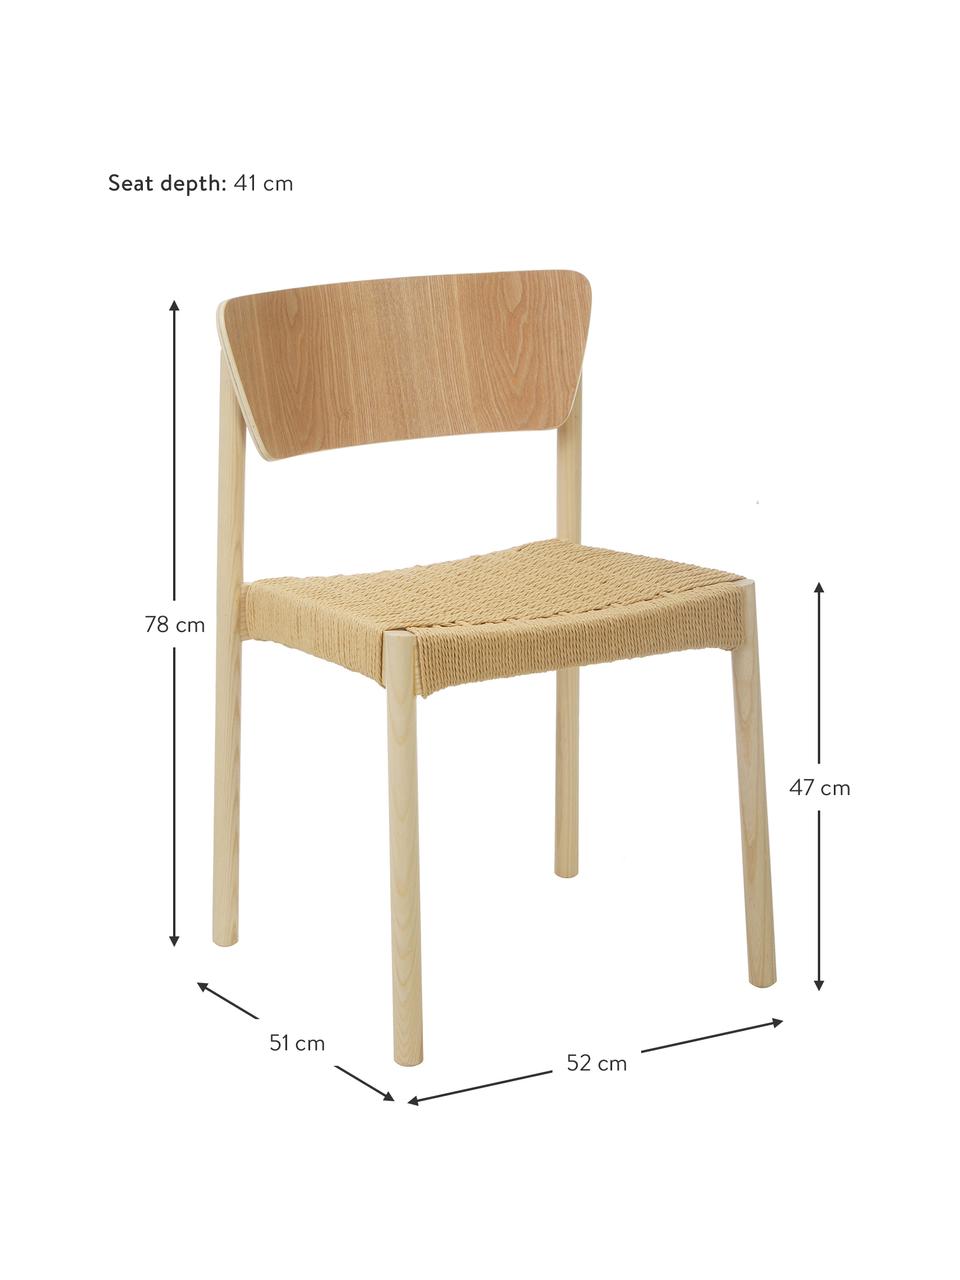 Houten stoelen Danny met rotan zitvlak, 2 stuks, Frame: massief beukenhout, Zitvlak: papier rotan, Beukenhout, B 52 x D 51 cm